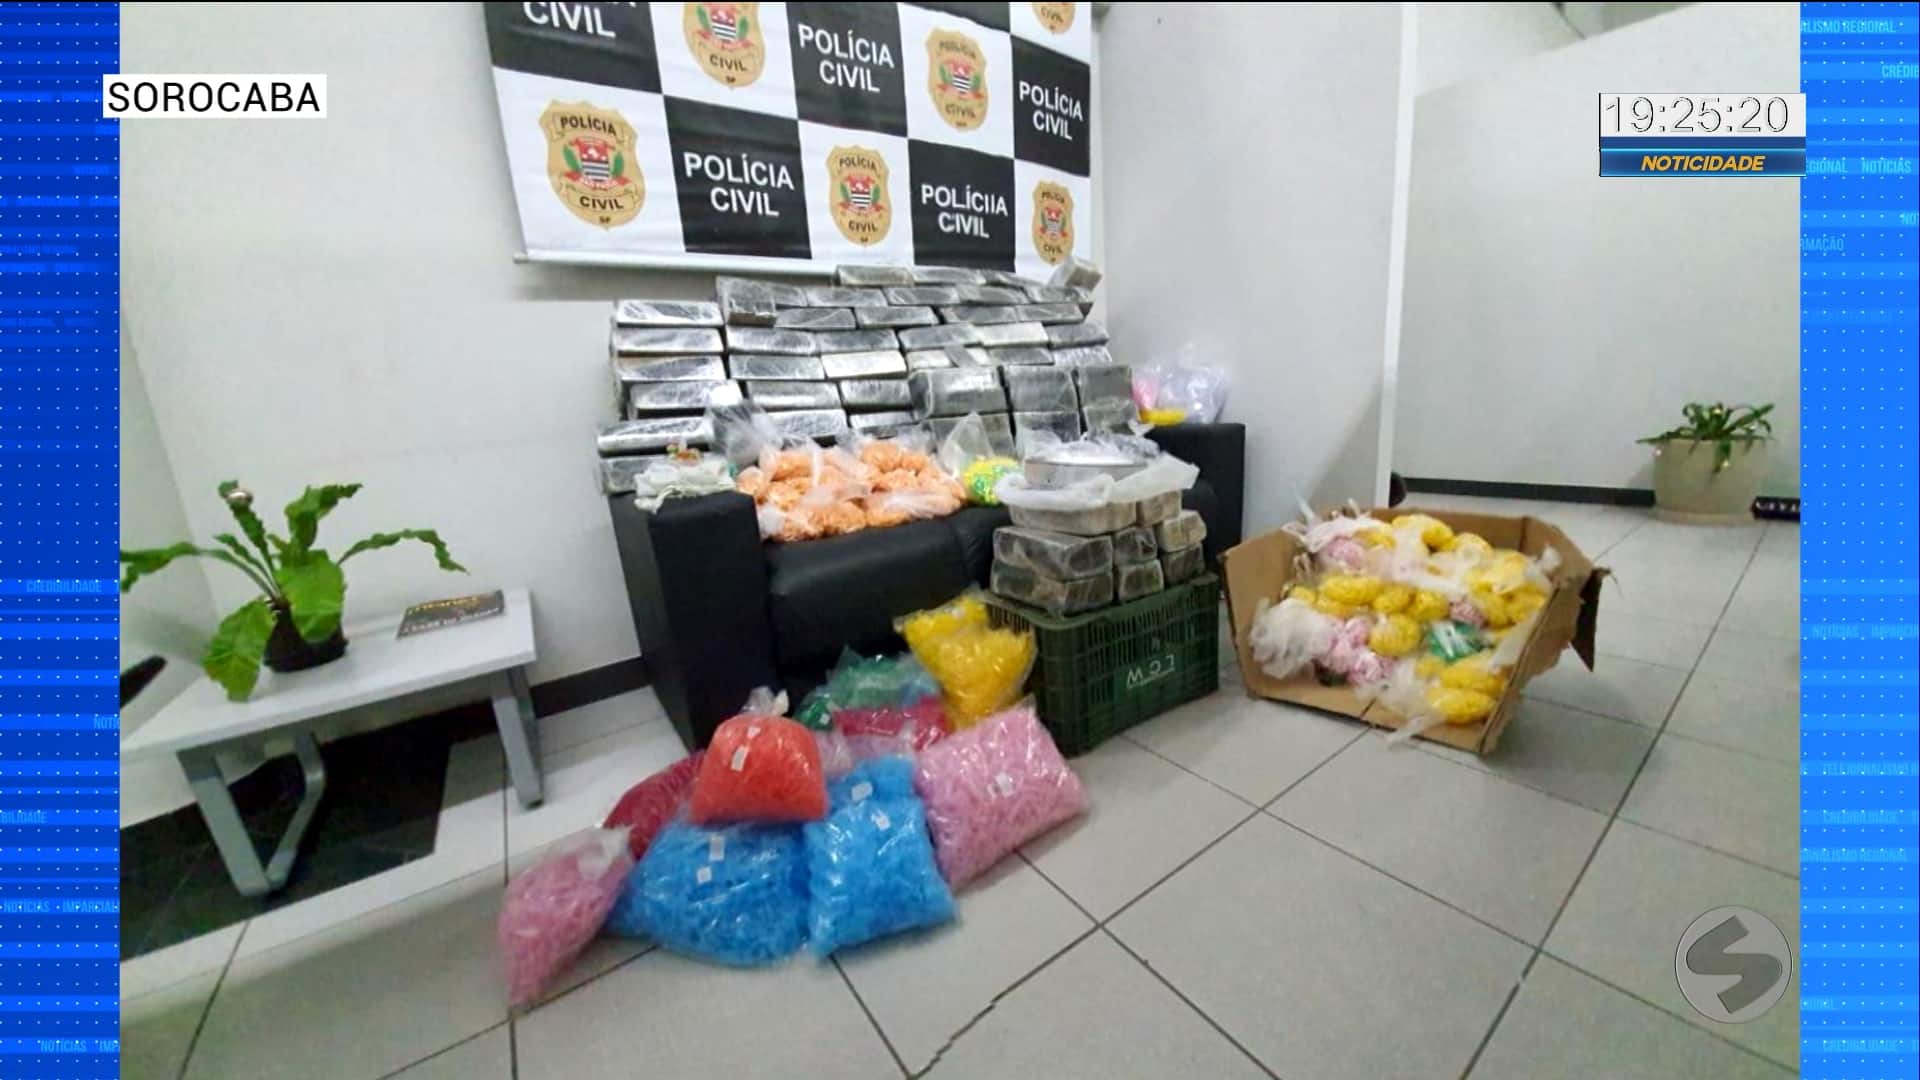 Dupla é presa com grande quantidade de drogas em Sorocaba